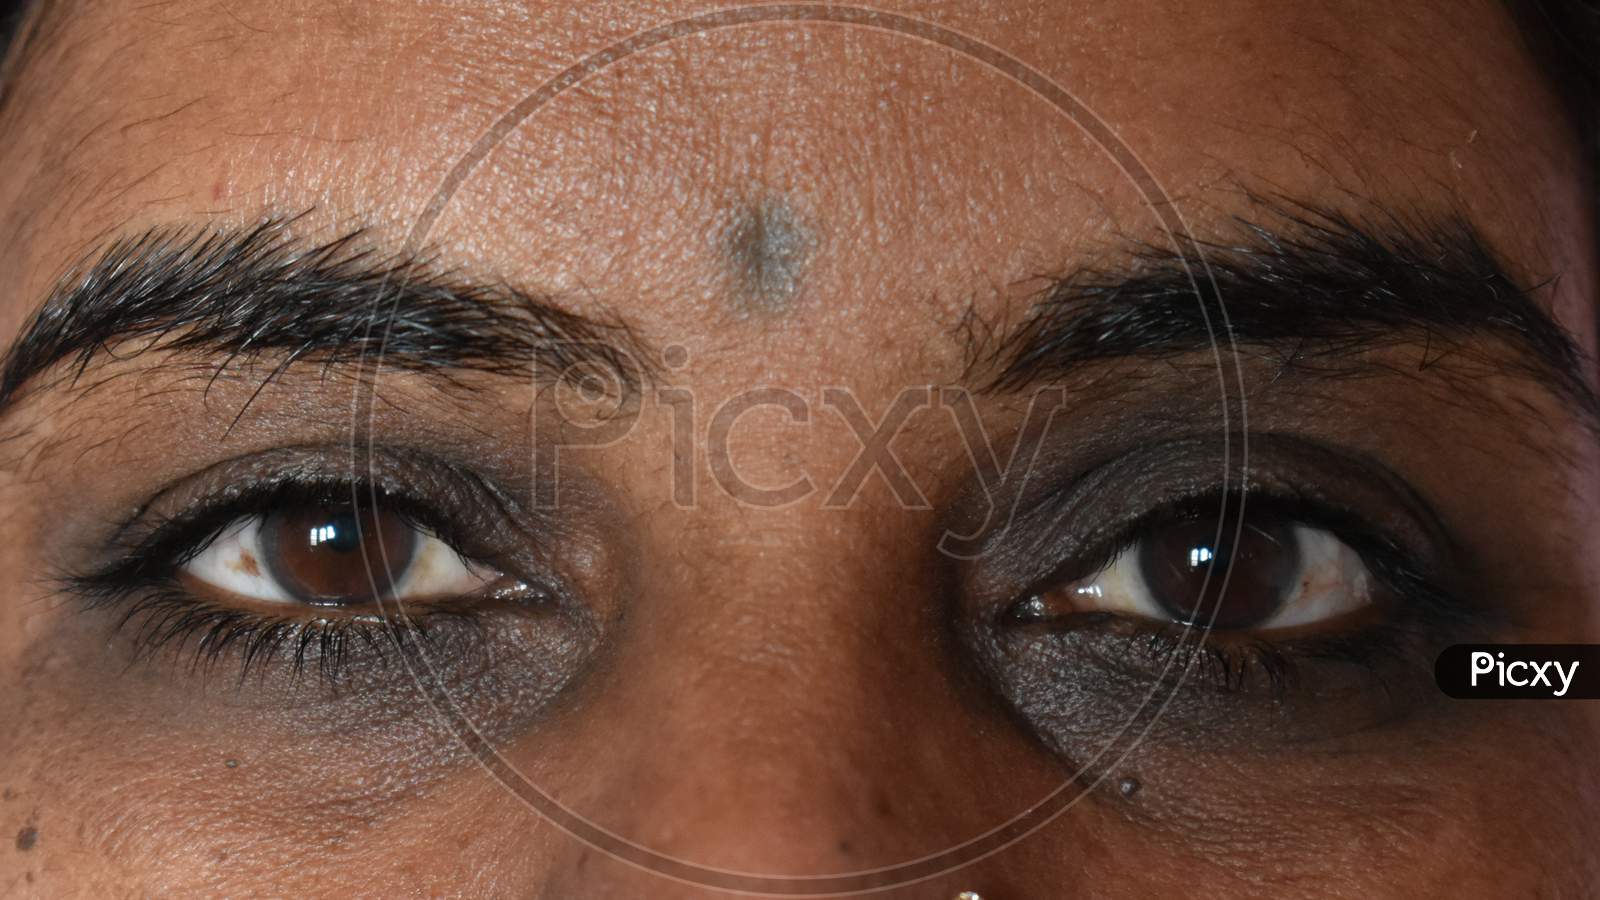 Dark circles around eyes of Indian women